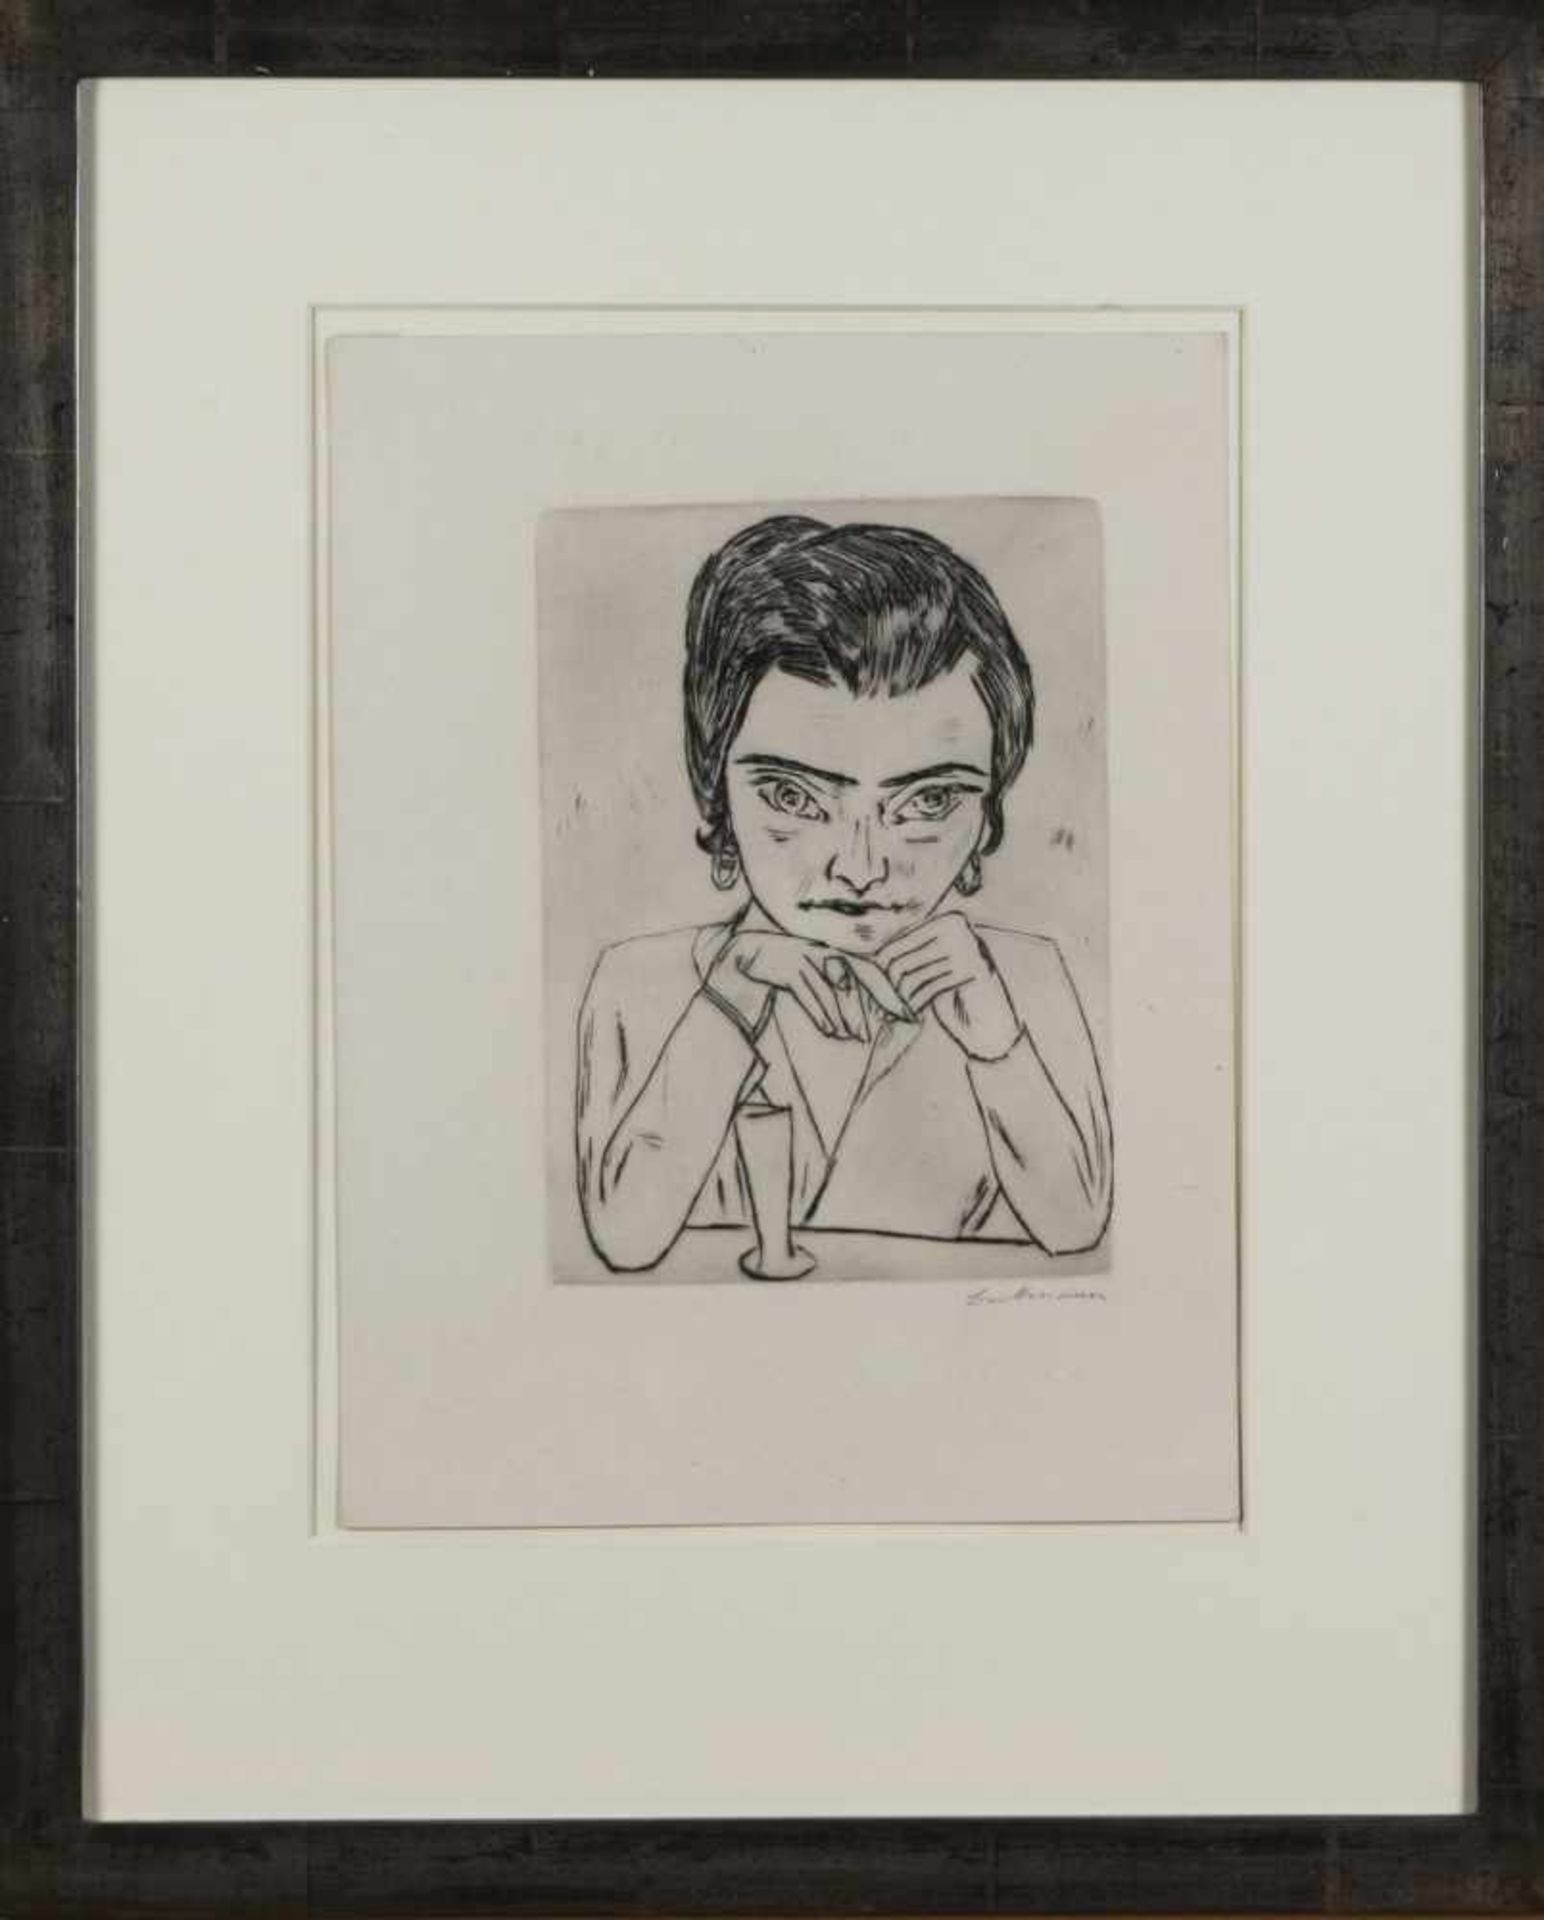 Max Beckmann (Leipzig 1894 - 1950 New York), 'Bildnis Naila mit aufgestützten Armen und Glas',